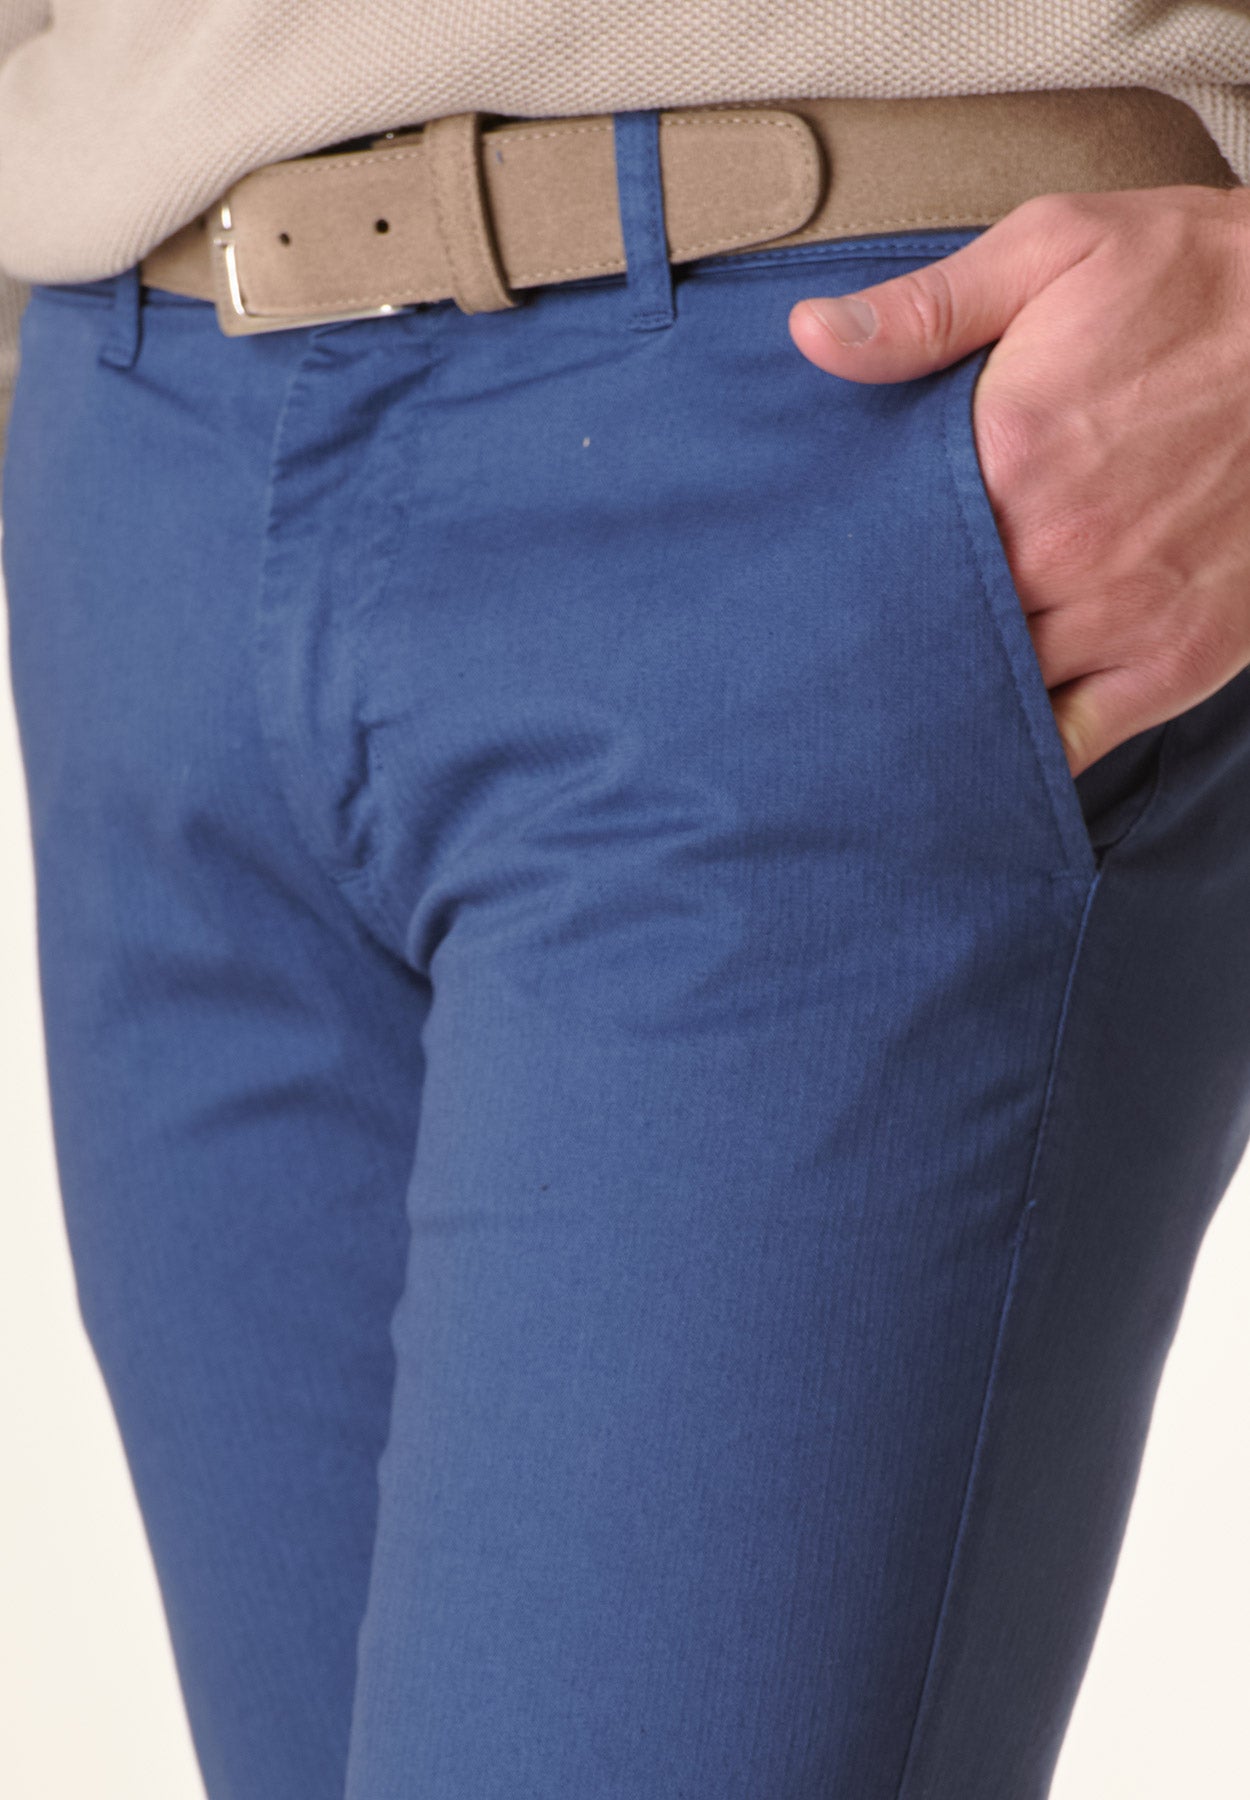 Bluette resca cotton slim fit trousers